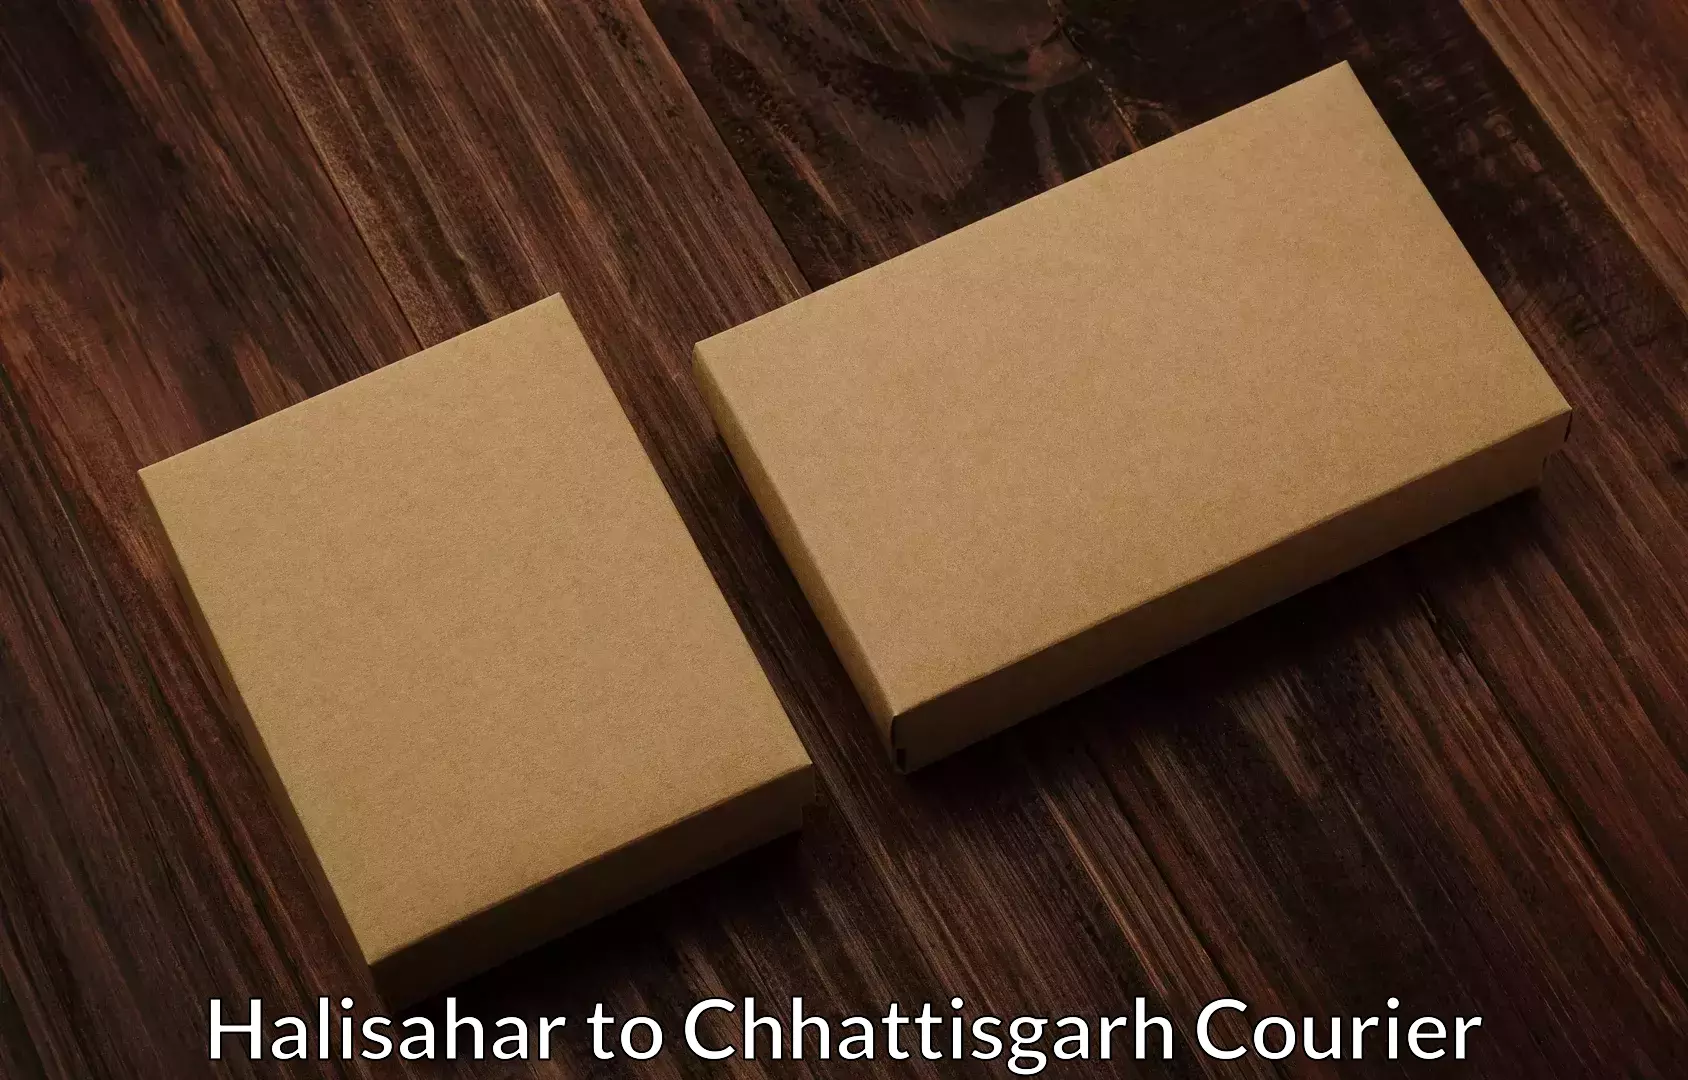 Furniture moving experts Halisahar to Premnagar